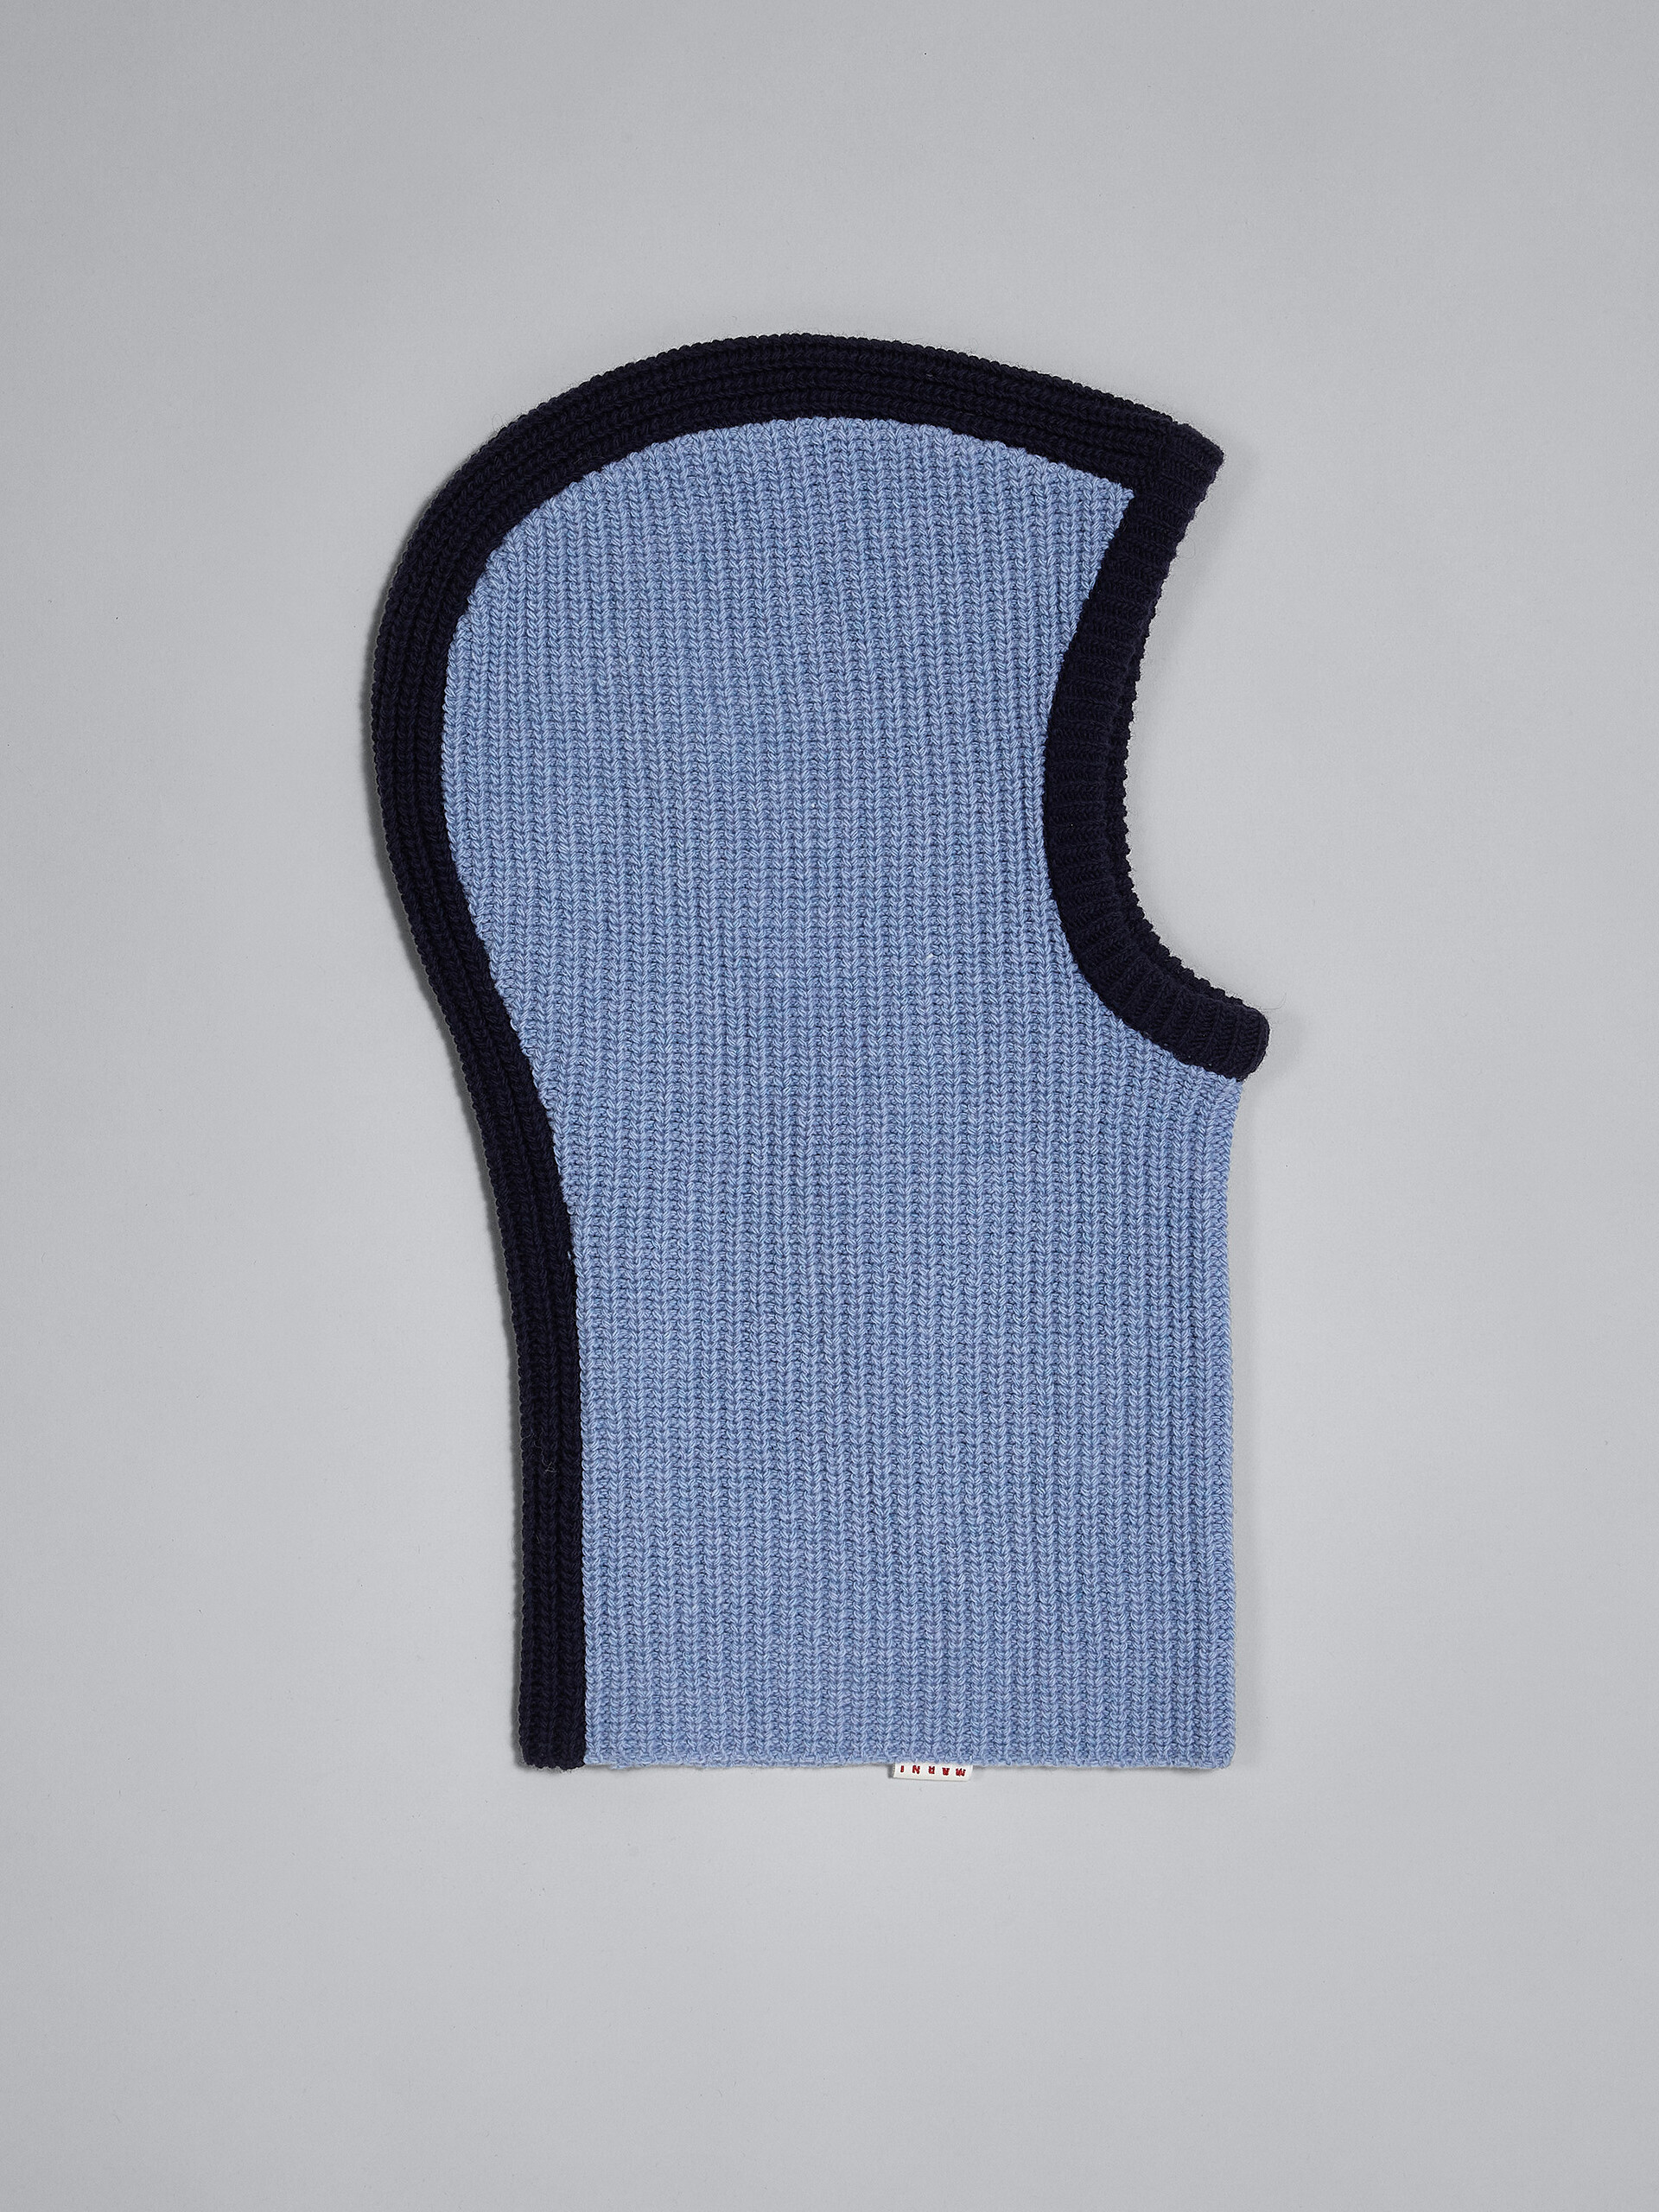 Cagoule en laine Shetland bleu pâle - Autres accessoires - Image 2